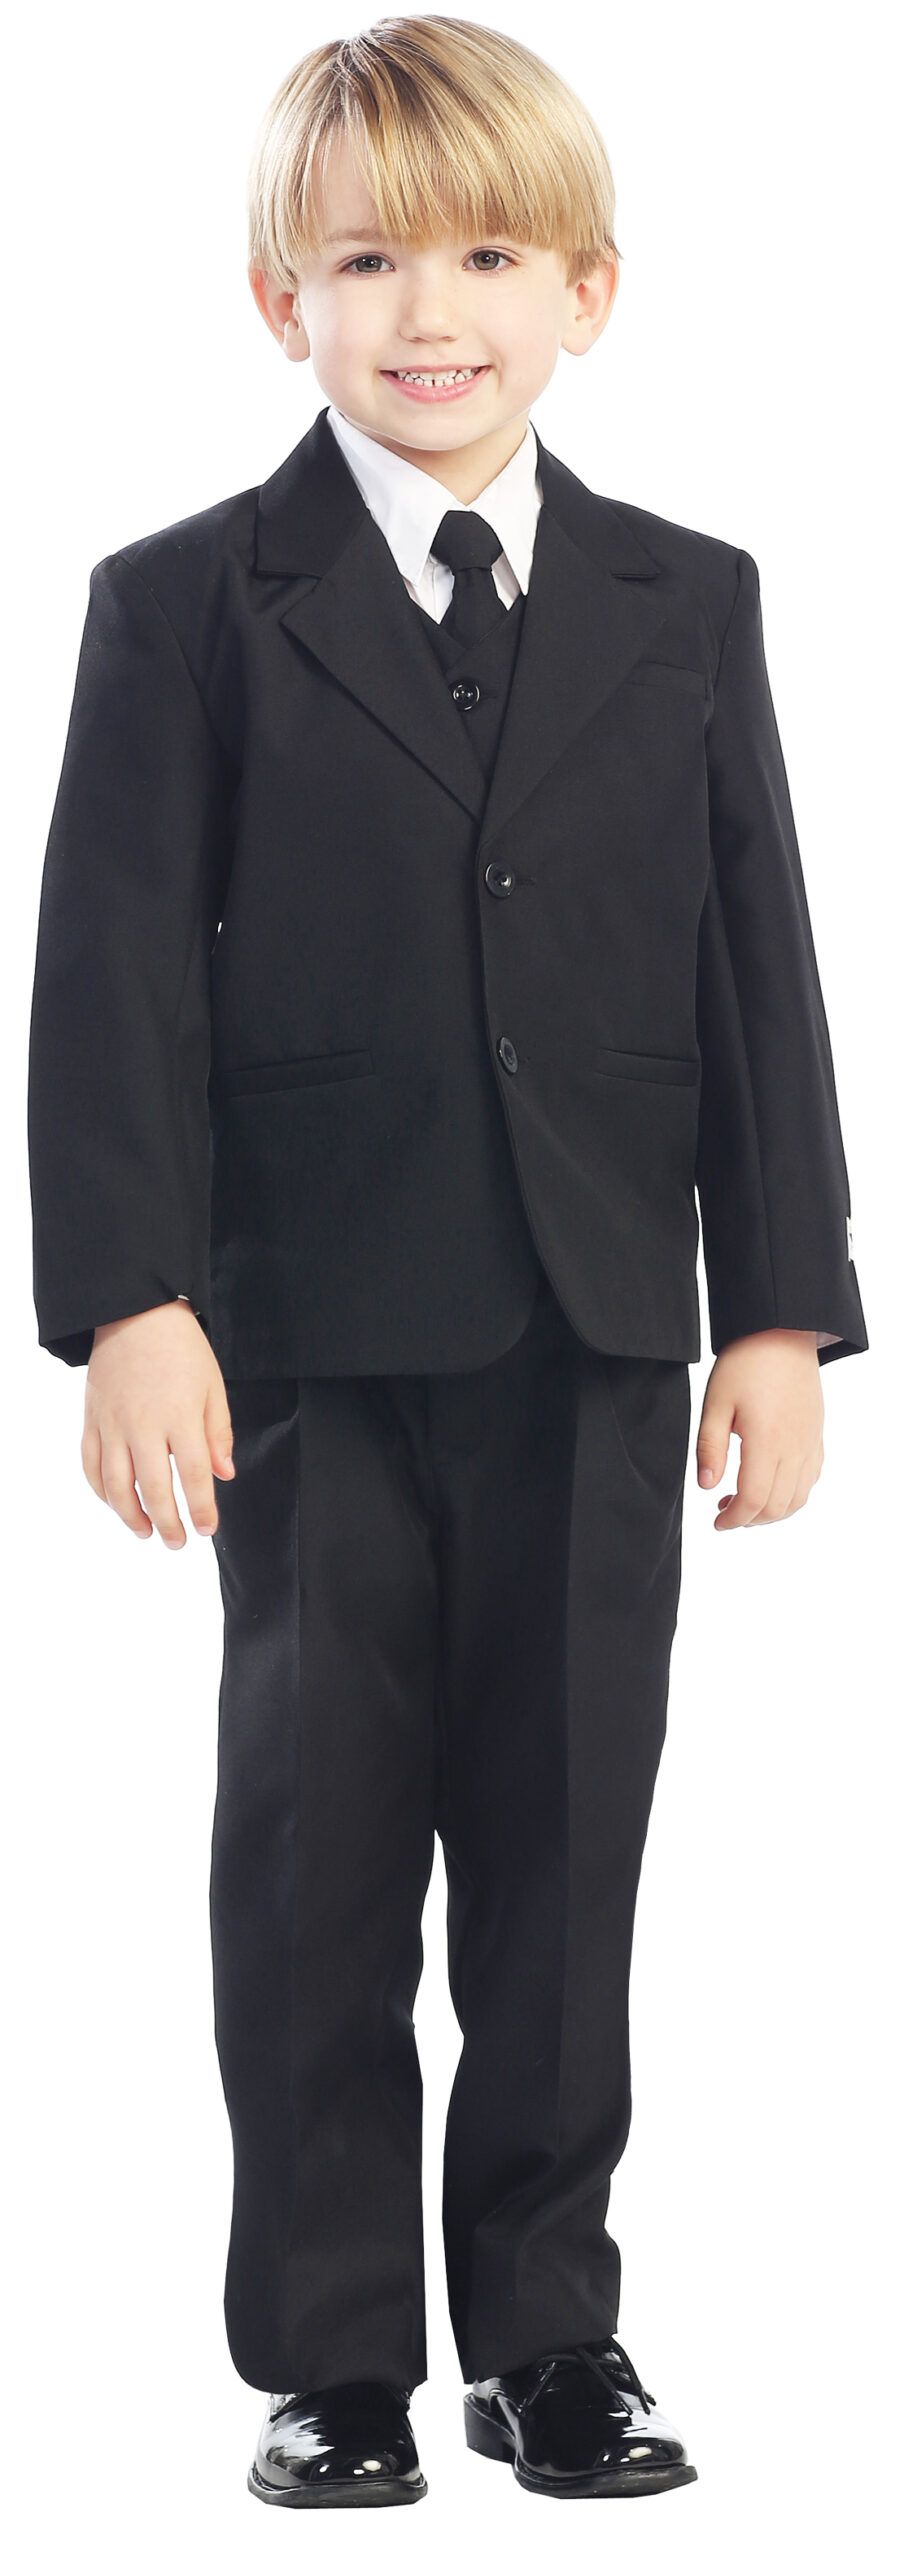 Avery Hill 5-Piece Boy's 2-Button Dress Suit Full-Back Vest - Black Size 18